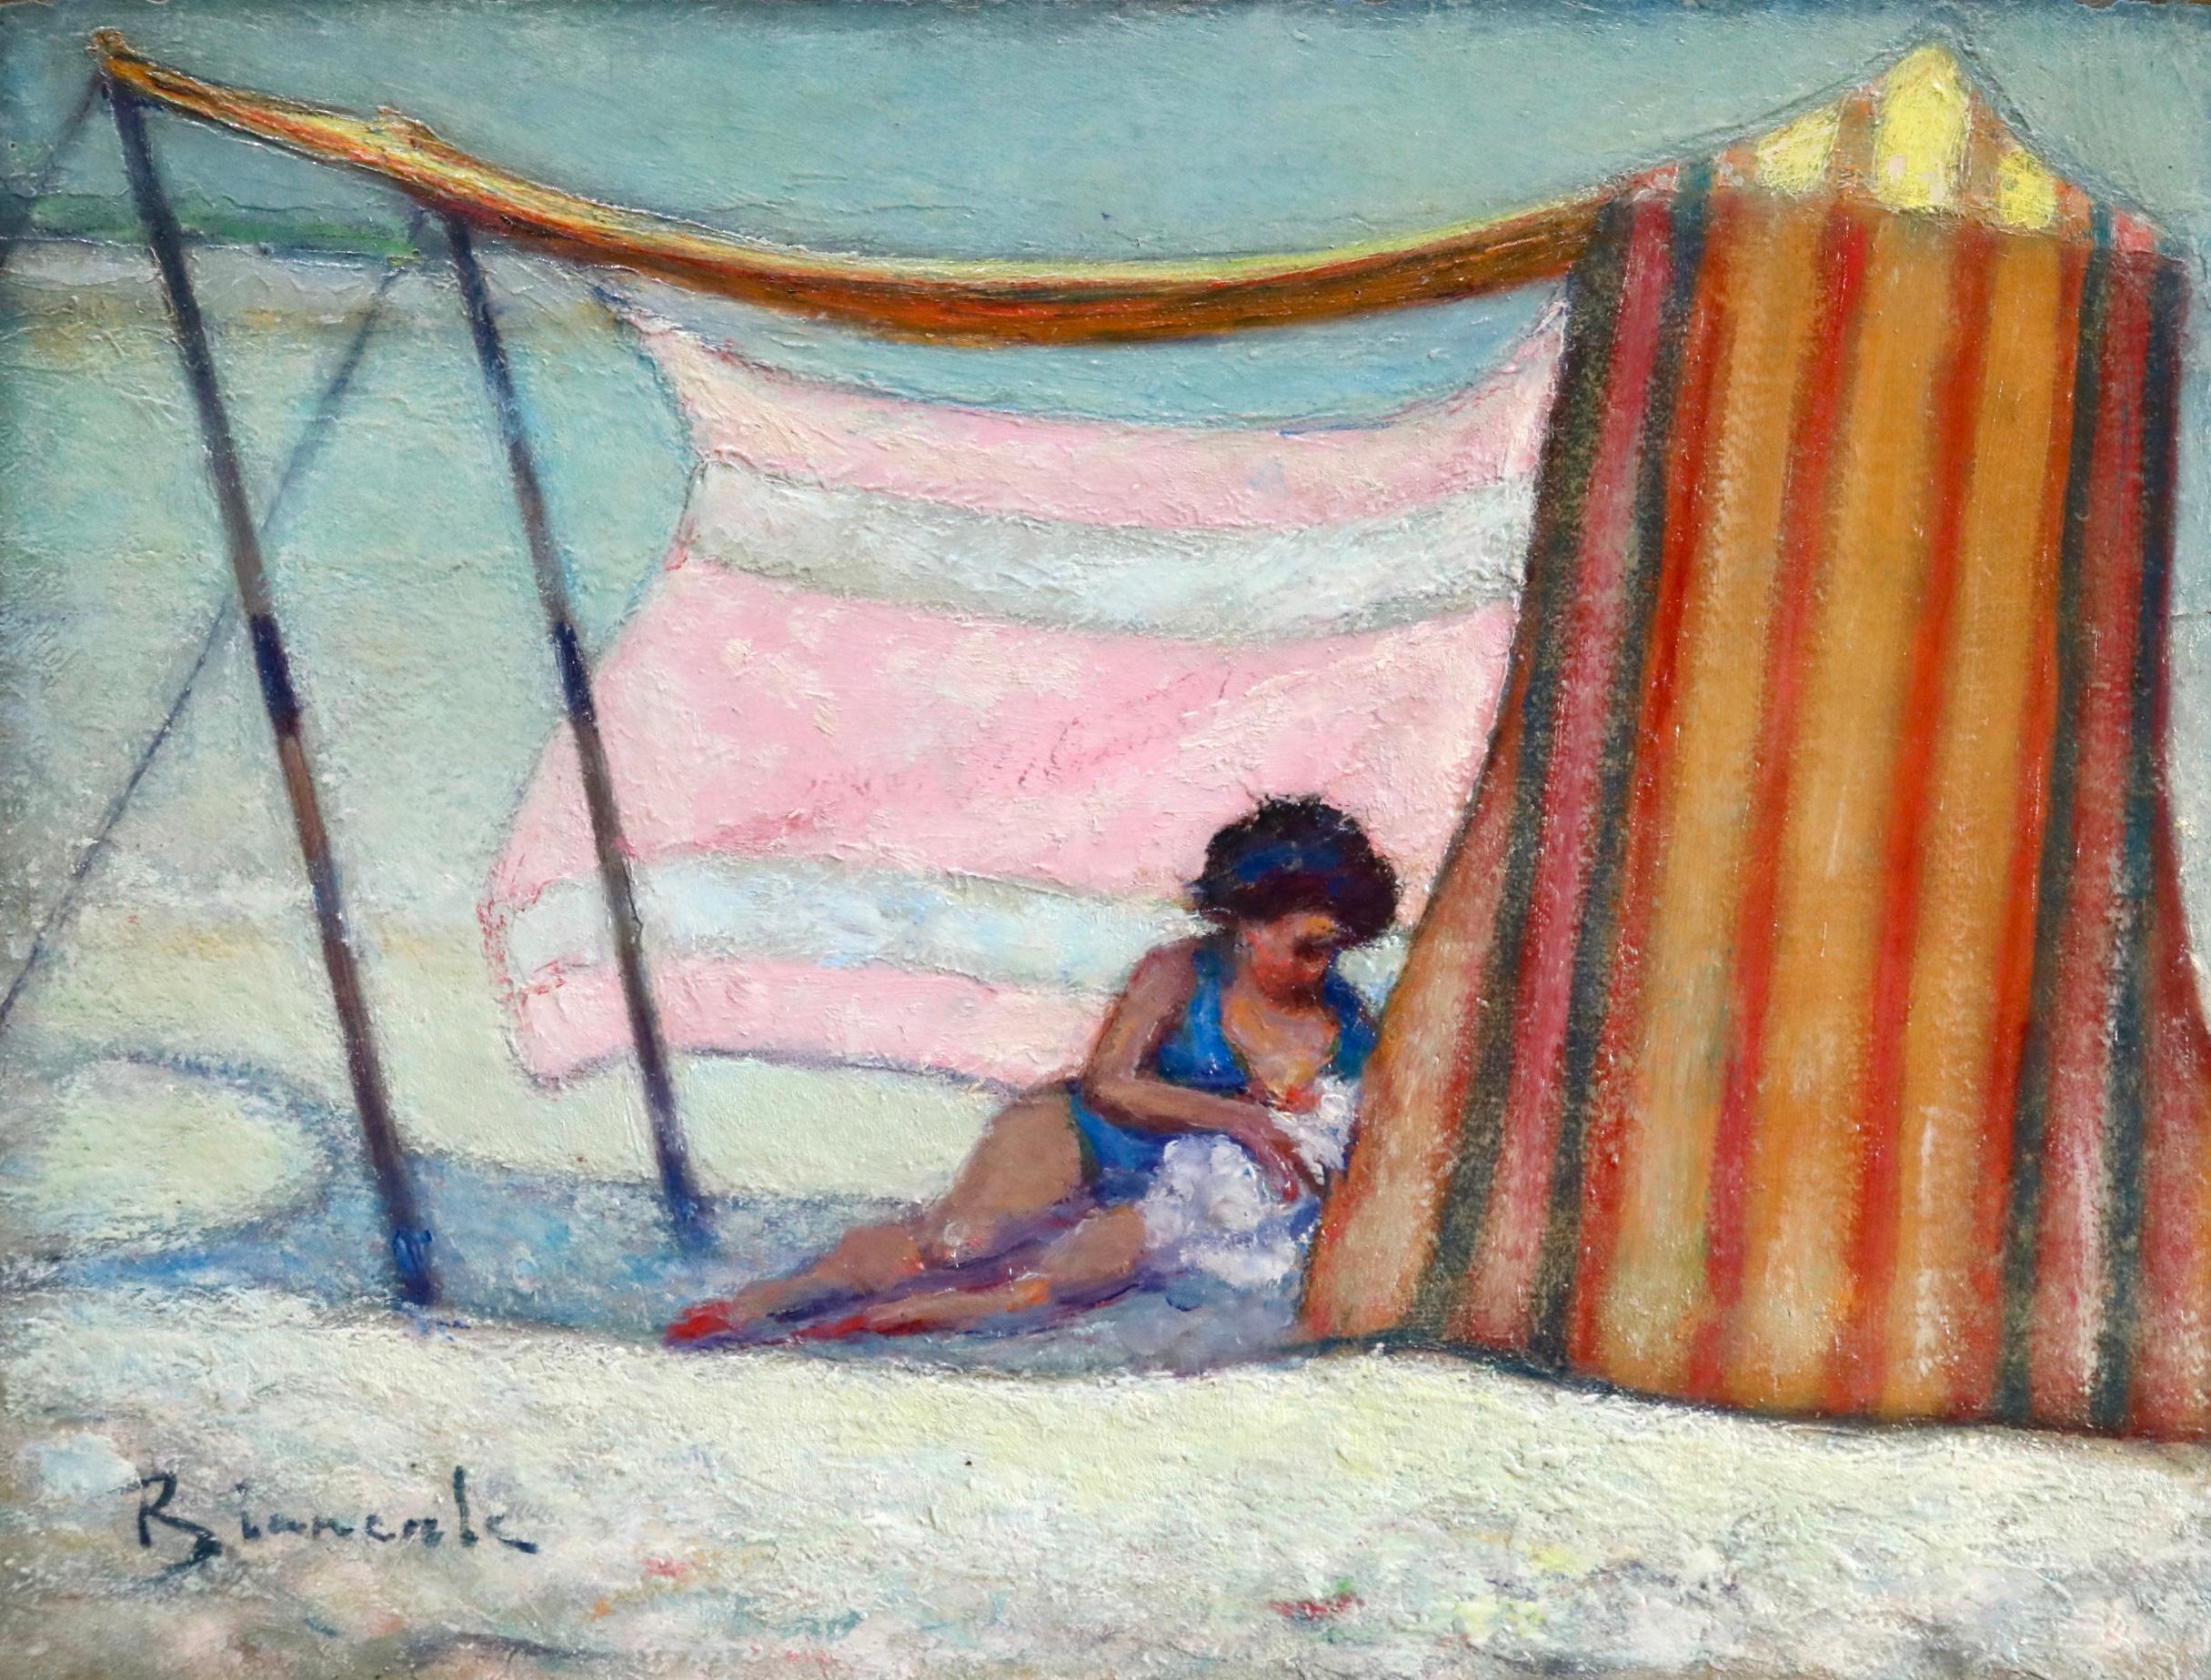 Bernardo Biancale Figurative Painting - Mere et enfant sur la plage - Post Impressionist, Figures on Beach - B Biancale